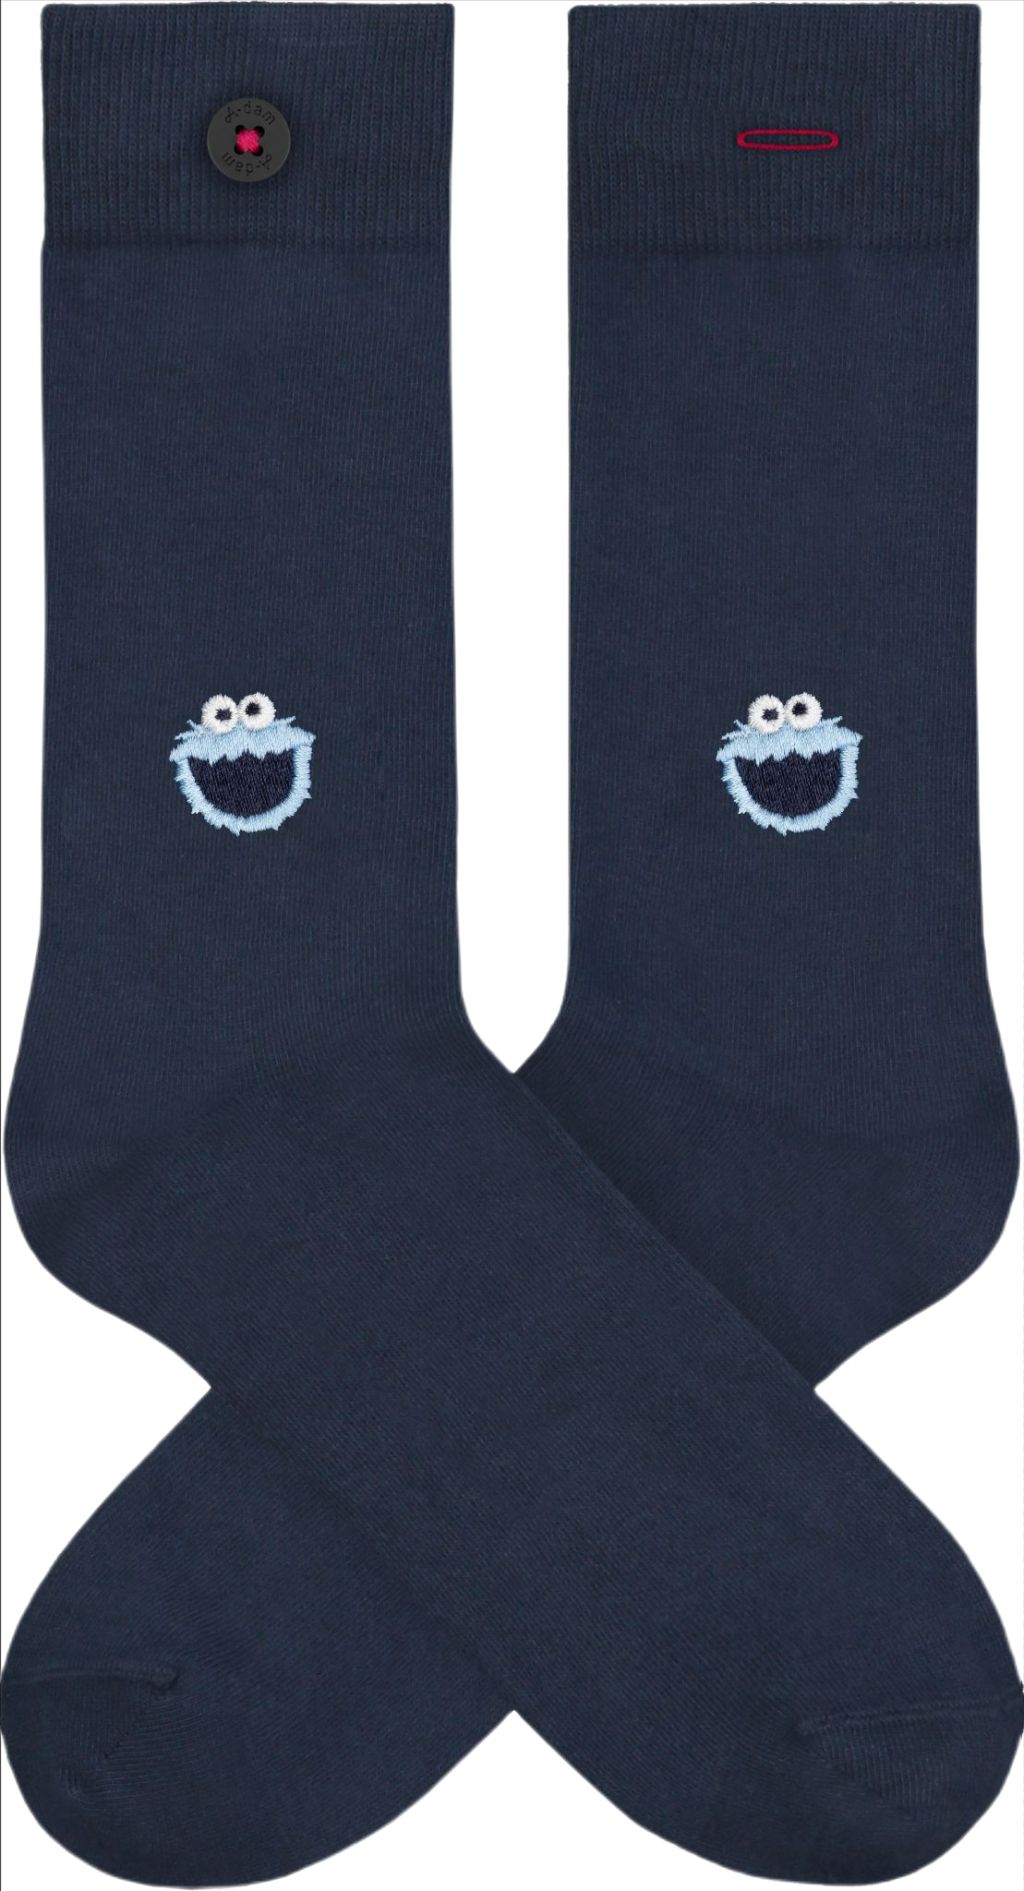 Cookie Monster - Socks